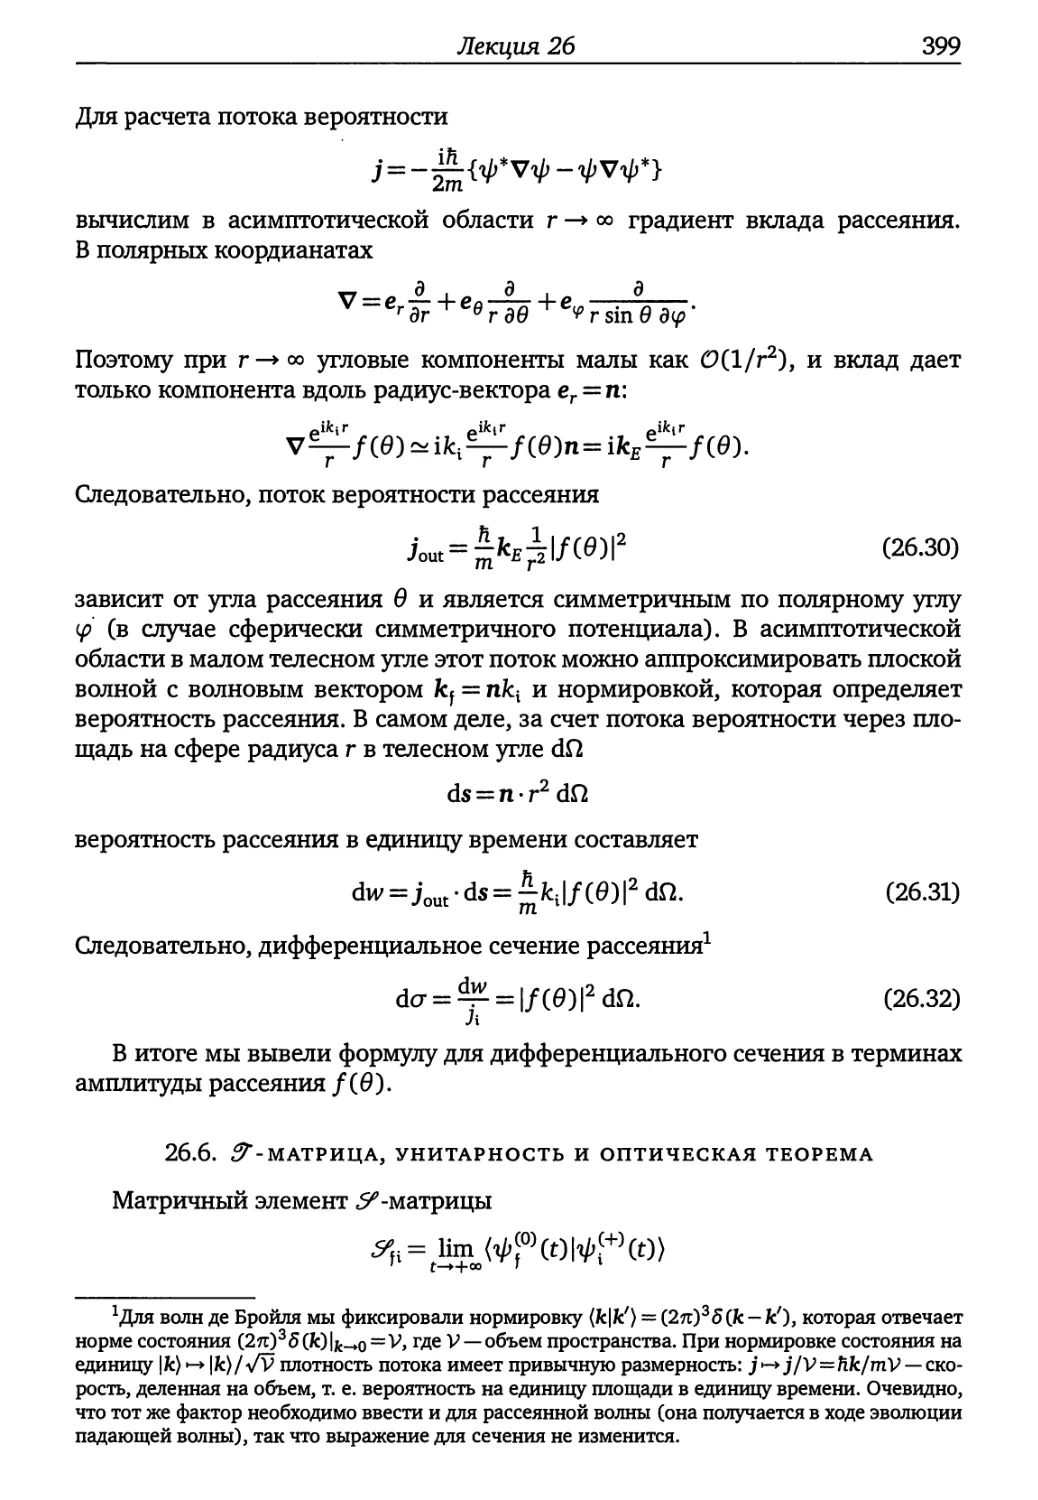 26.6. S-матрица, унитарность и оптическая теорема